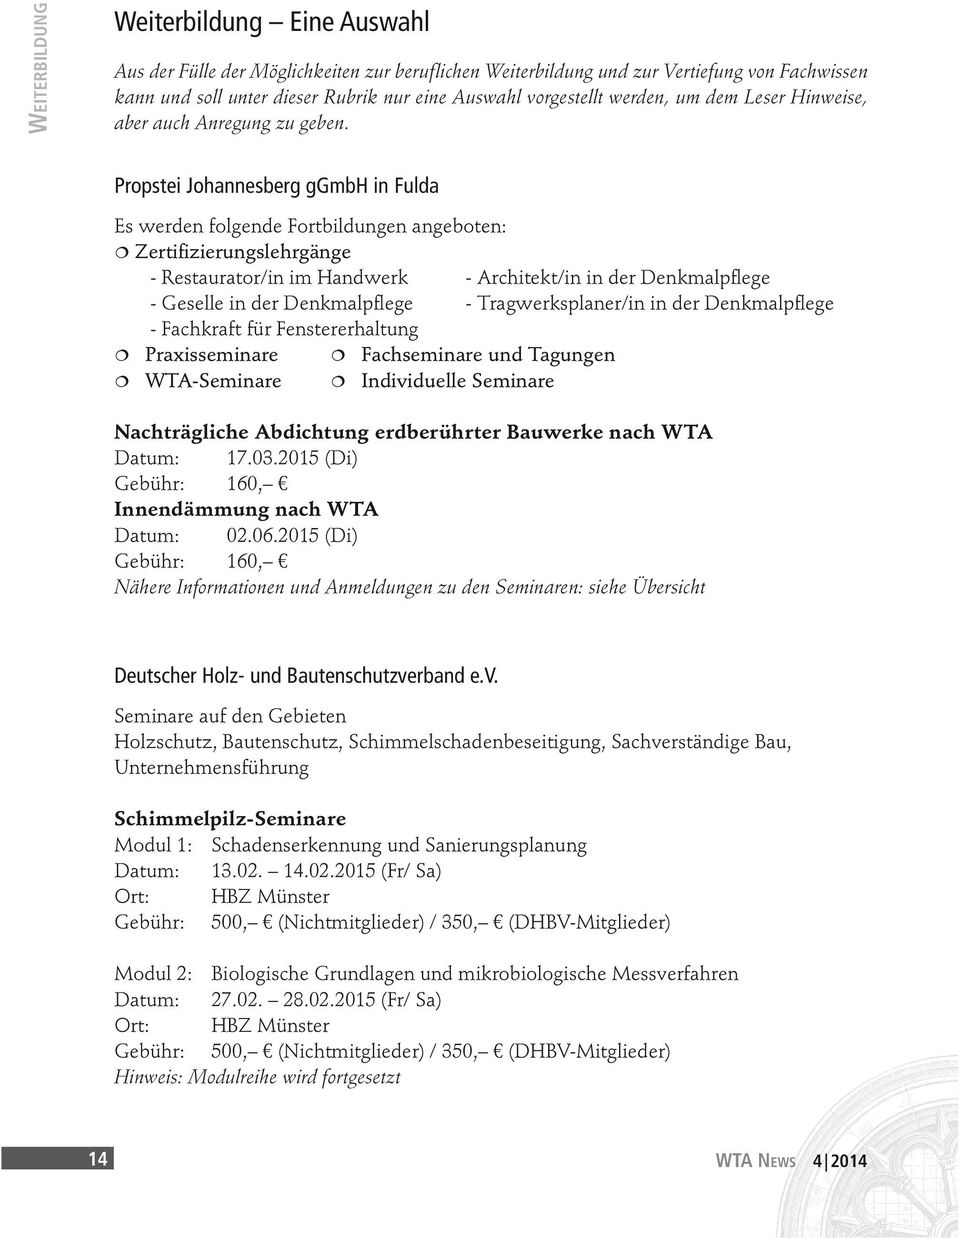 Propstei Johannesberg ggmbh in Fulda Es werden folgende Fortbildungen angeboten: Zertifizierungslehrgänge - Restaurator/in im Handwerk - Architekt/in in der Denkmalpflege - Geselle in der